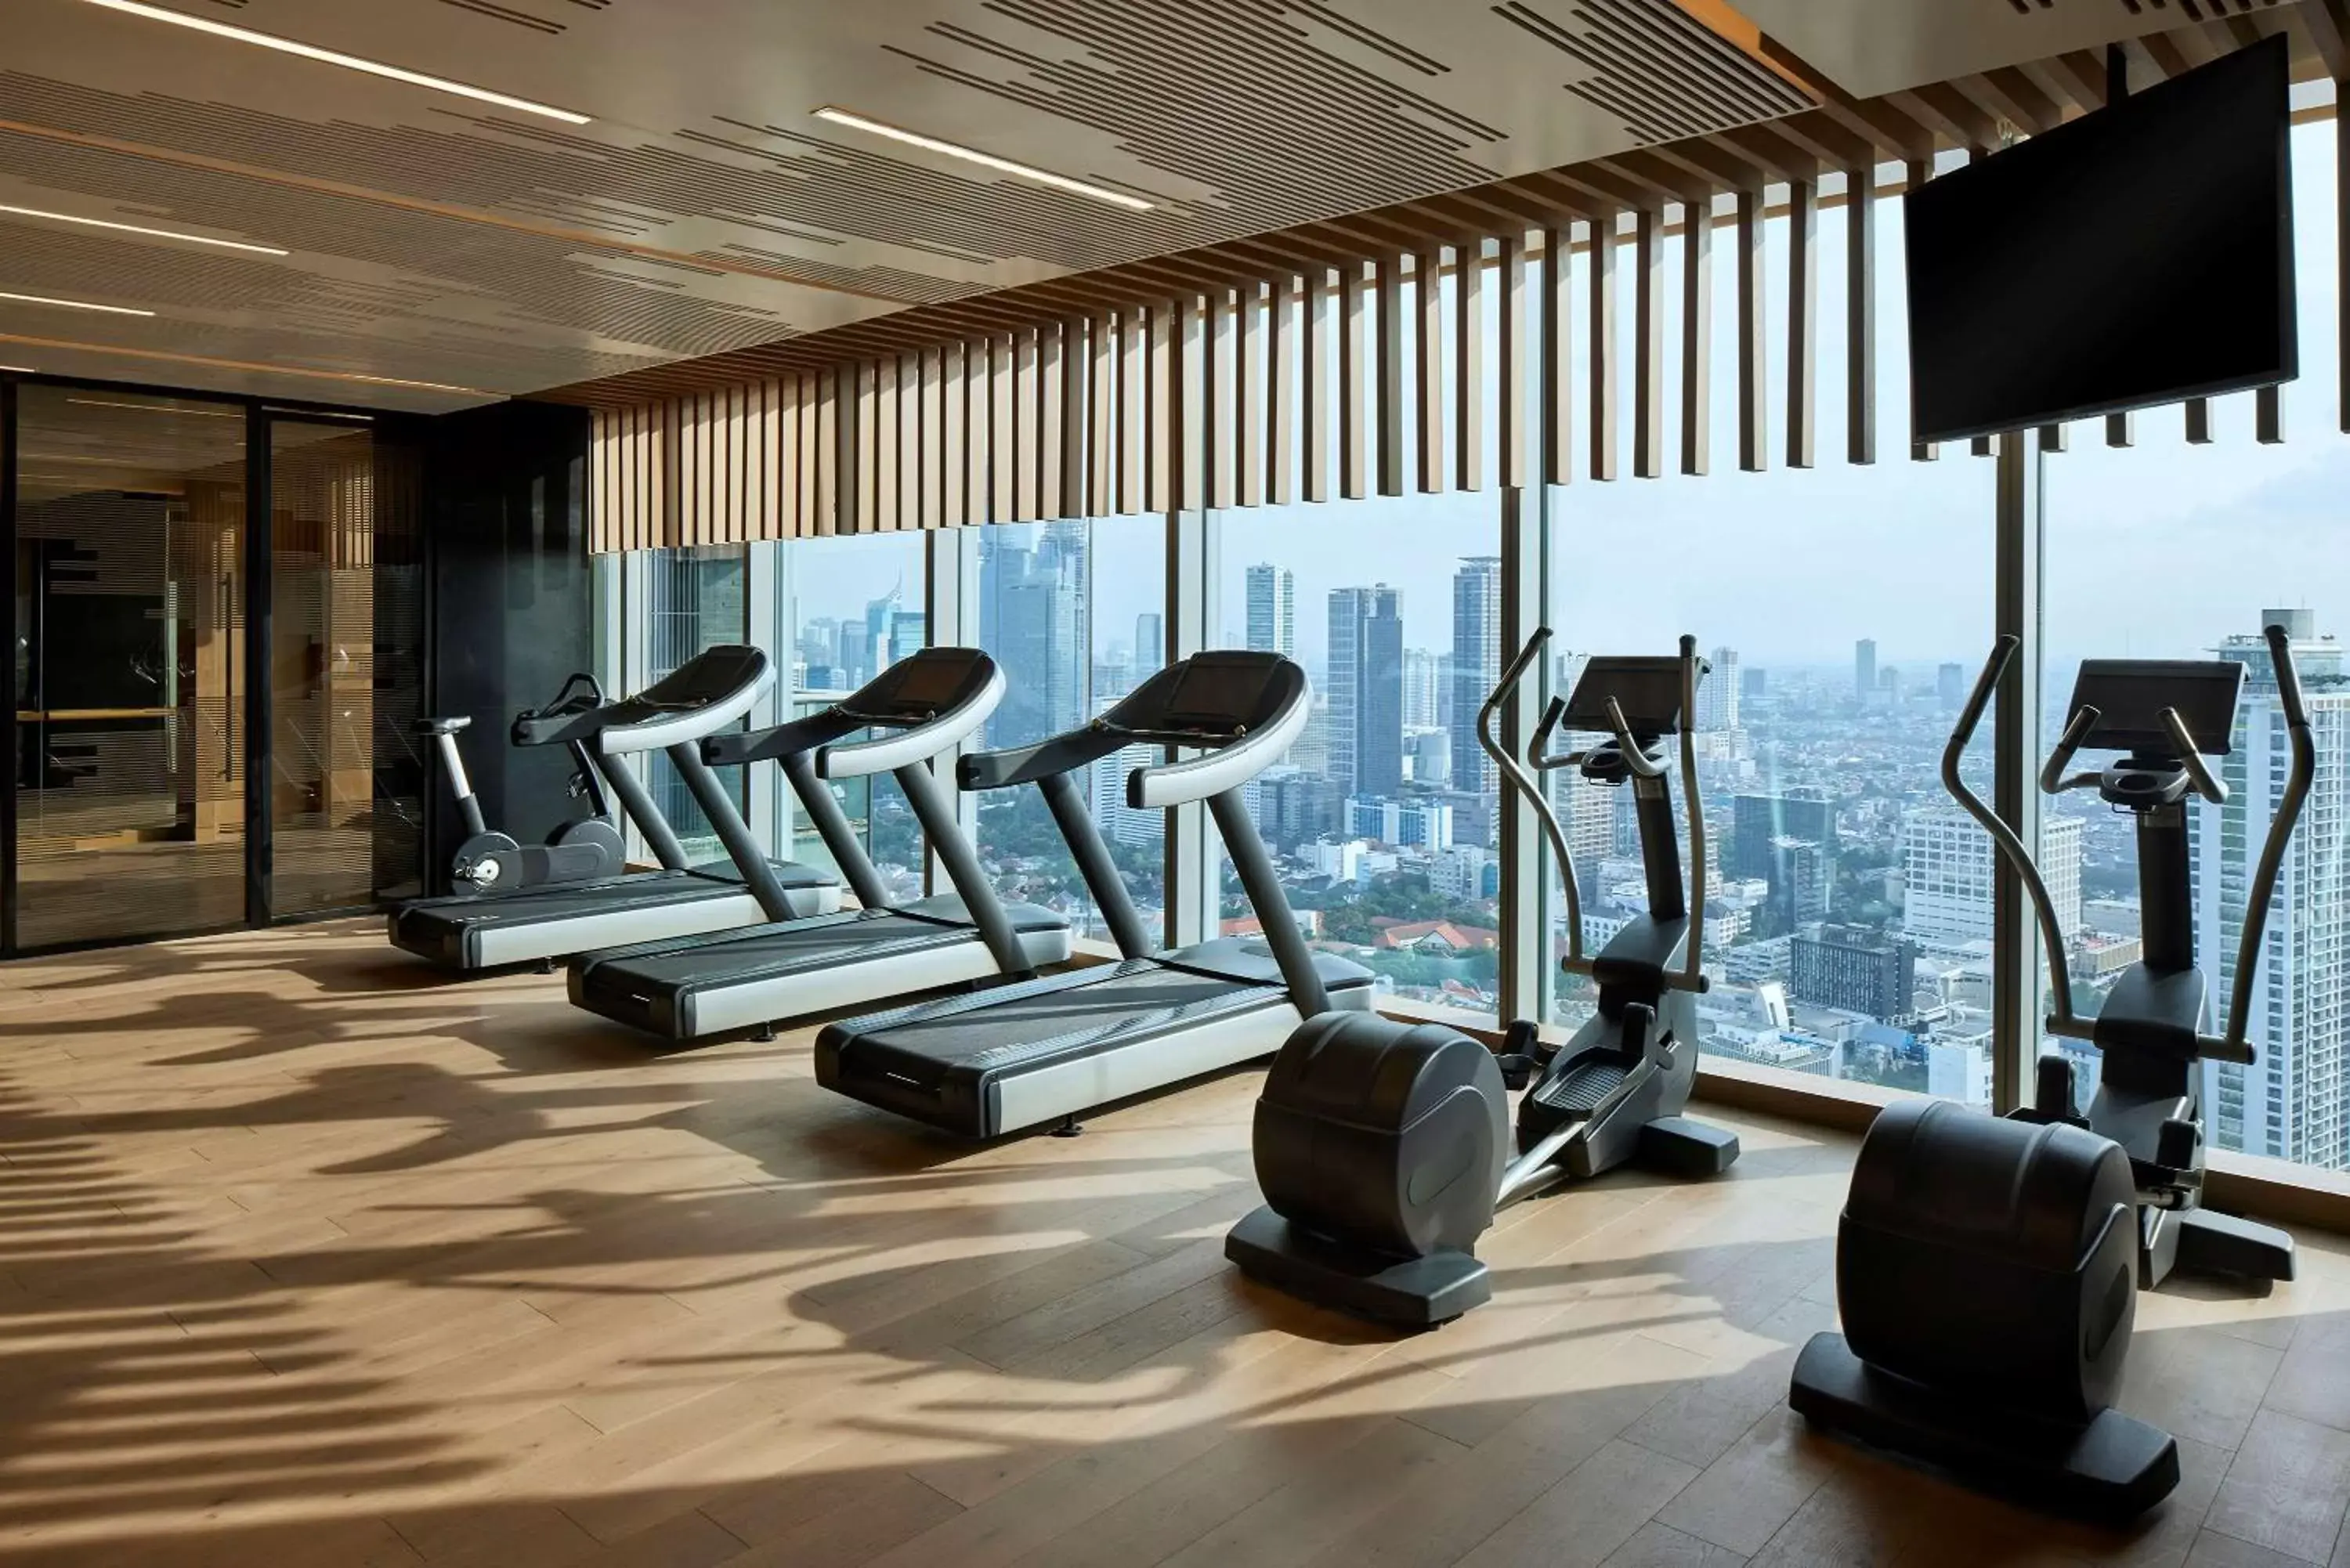 Fitness centre/facilities, Fitness Center/Facilities in Park Hyatt Jakarta